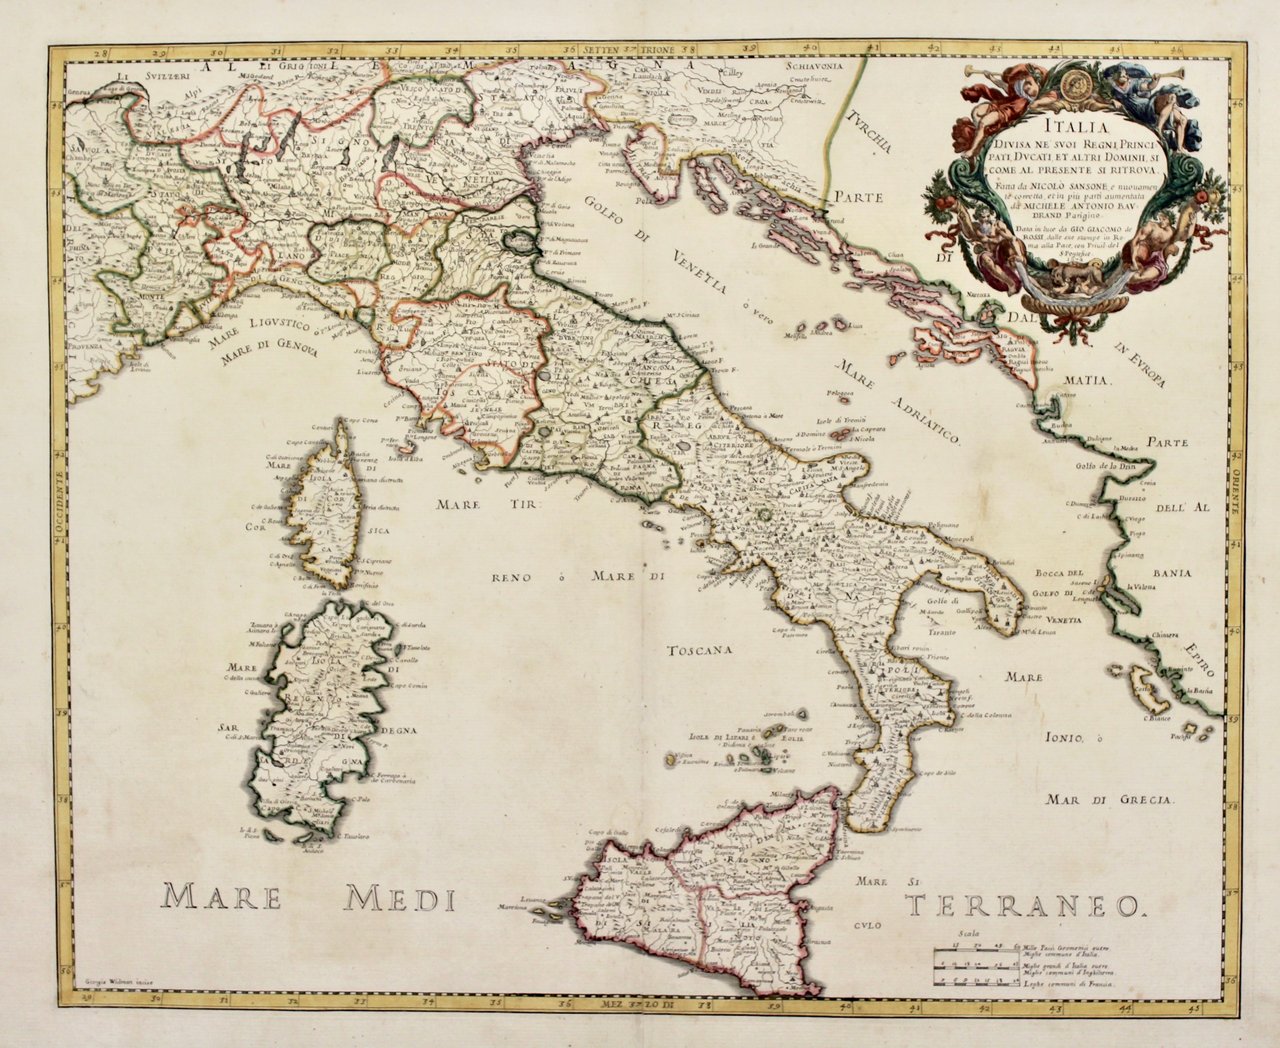 Italia divisa ne' suoi Regni, Principati, Ducati, et atri Dominii, …